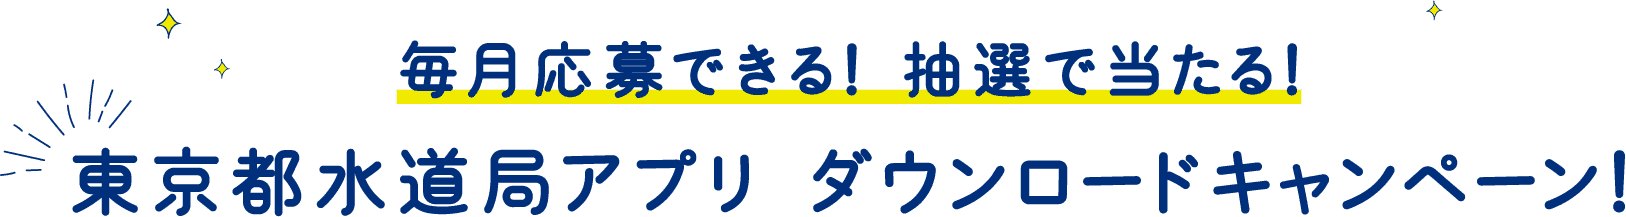 東京都水道局アプリ ダウンロードキャンペーン!